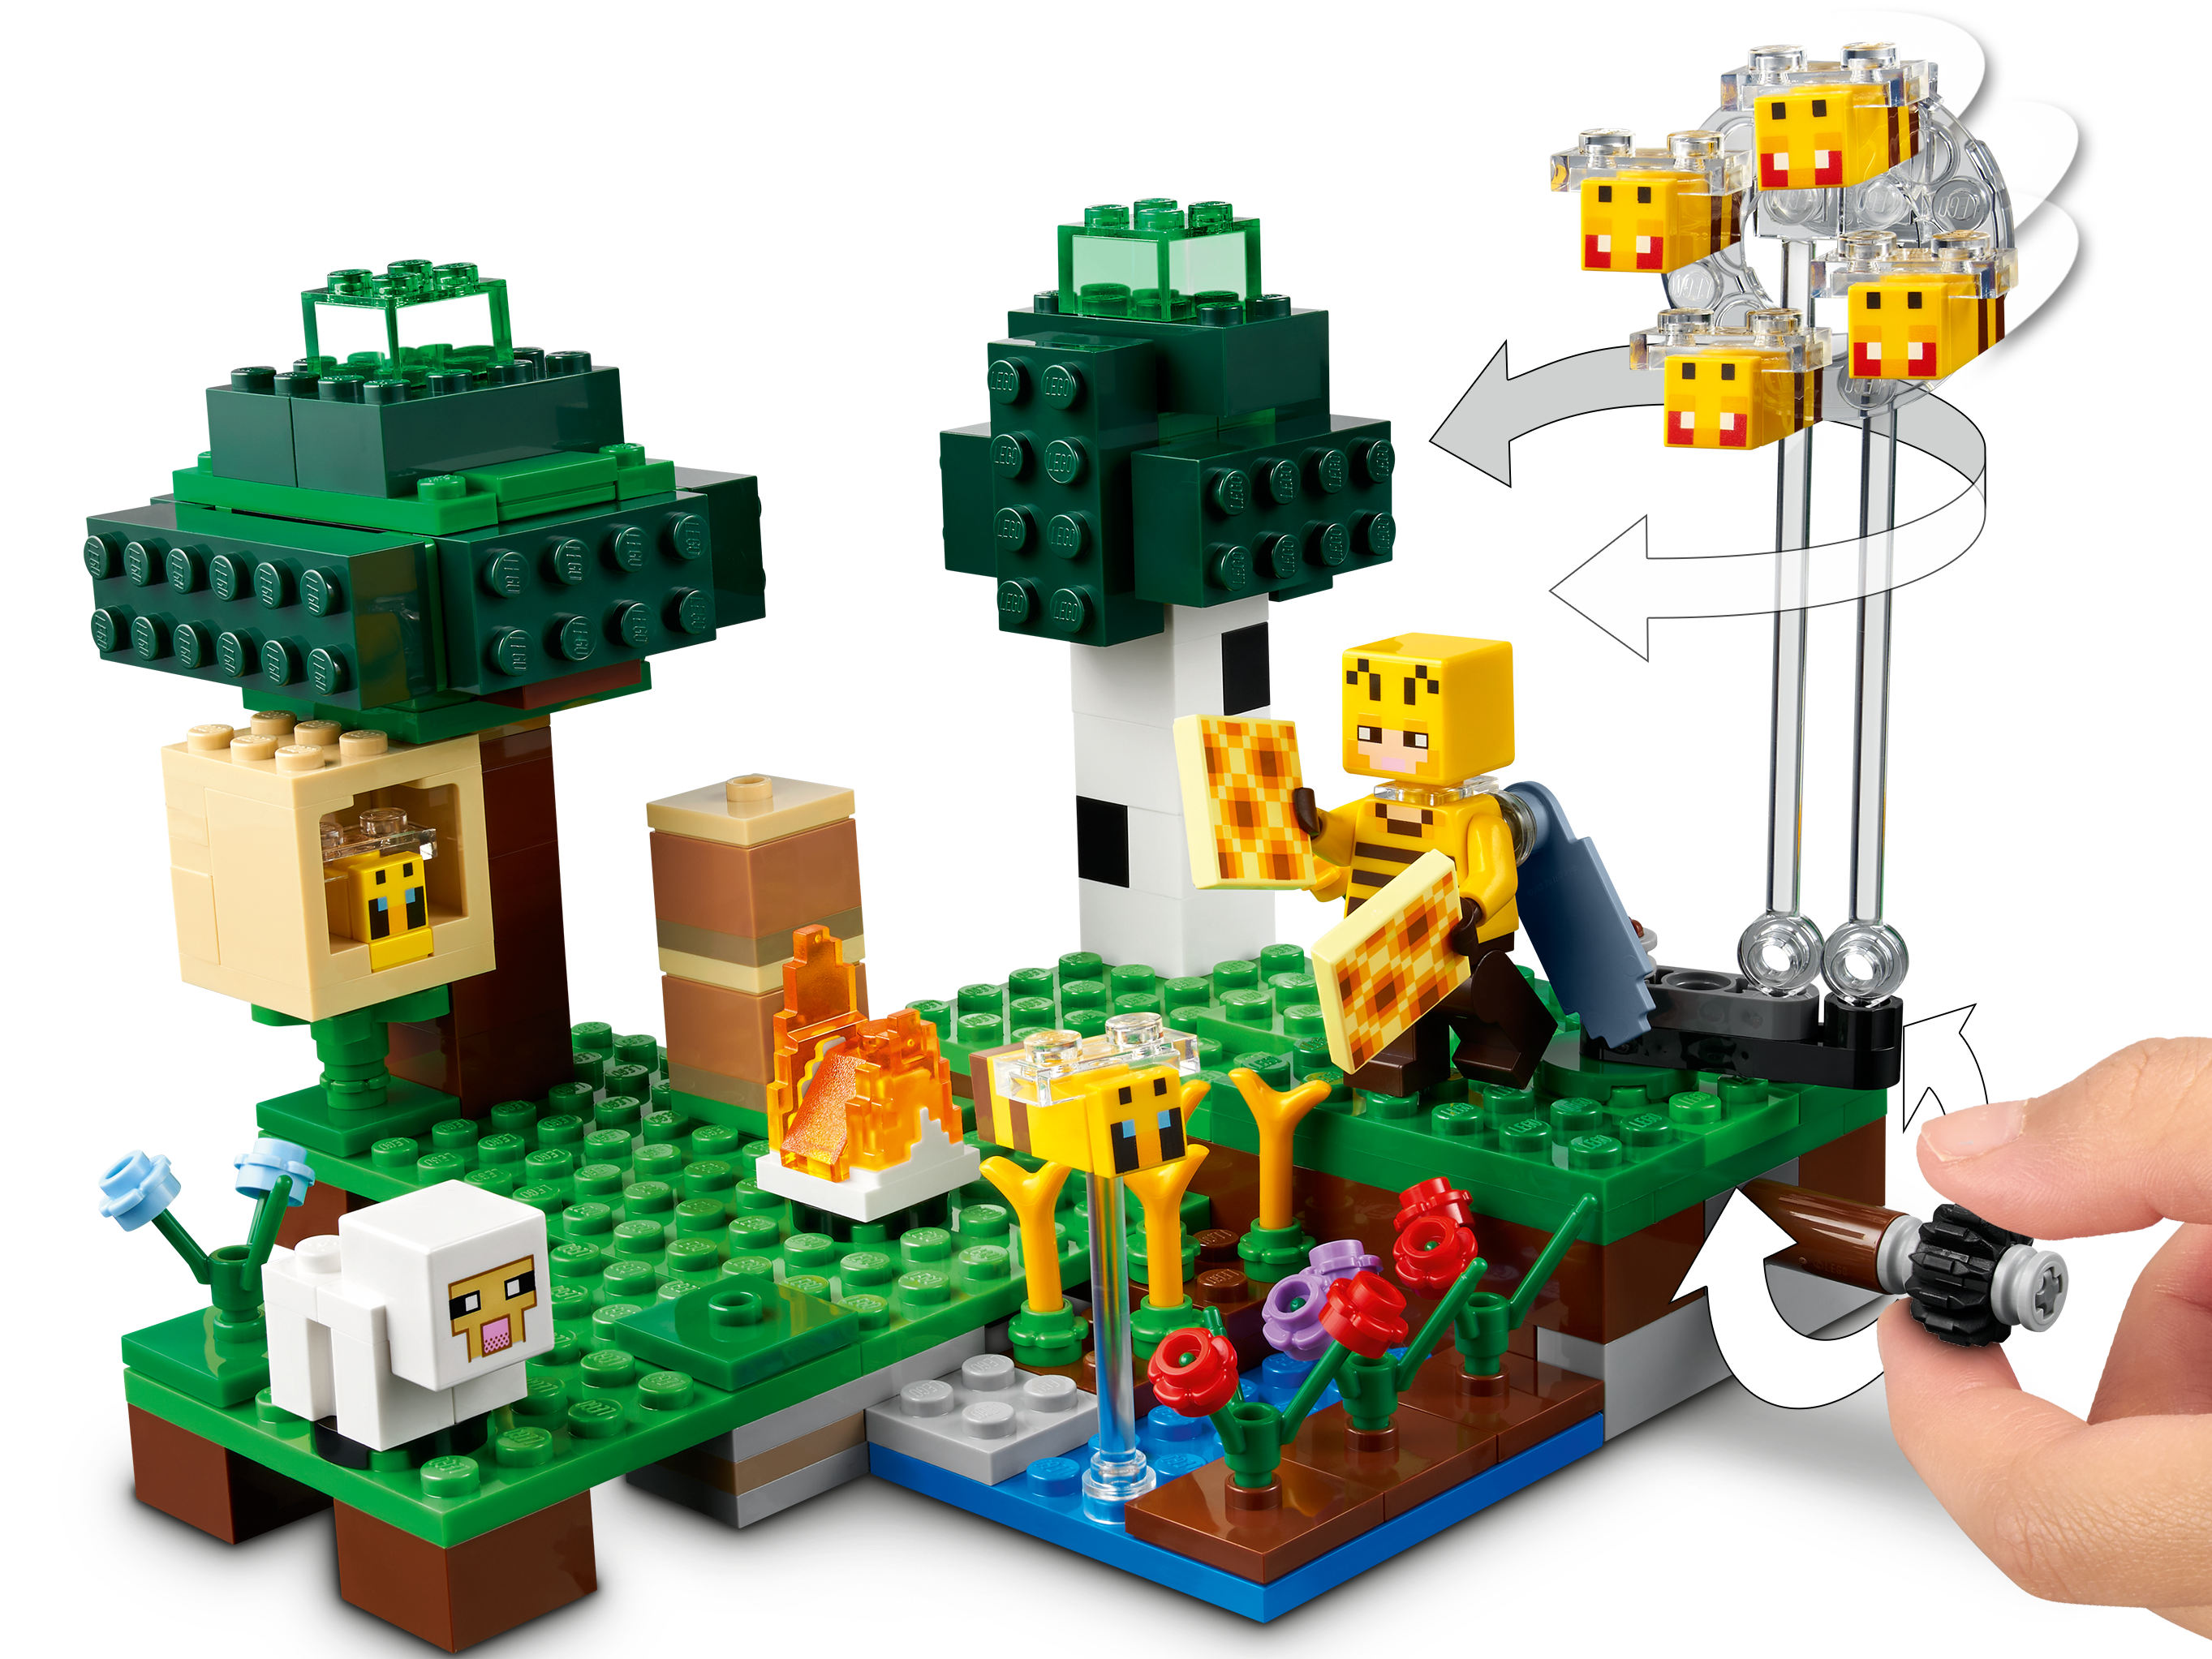 ULTRA RARO Lego Minecraft Villager & Baby Sheep de Set 21165